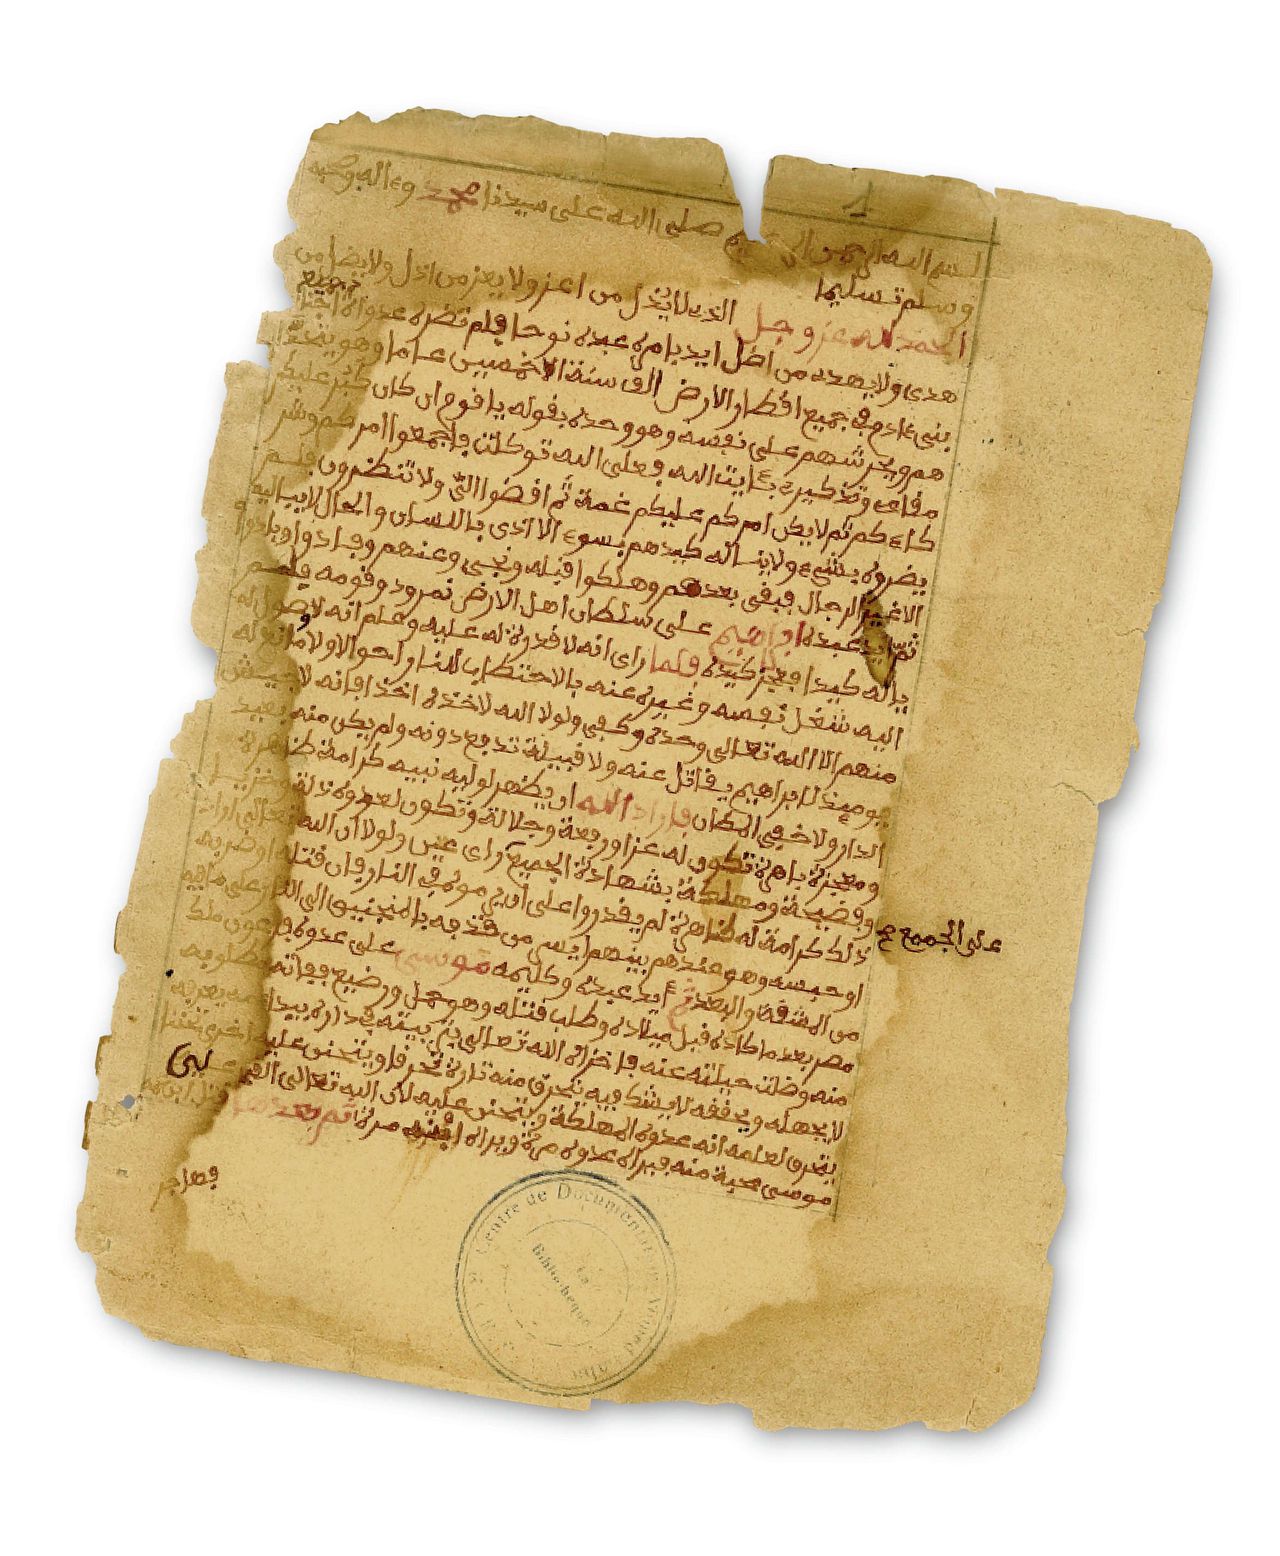 Handschriften uit Timboektoe: kopie van een levensbeschrijving van Mohammed uit de 12de eeuw (midden), een soera uit de Koran (18de eeuw, links) en een 19de- eeuwse brief (rechts).